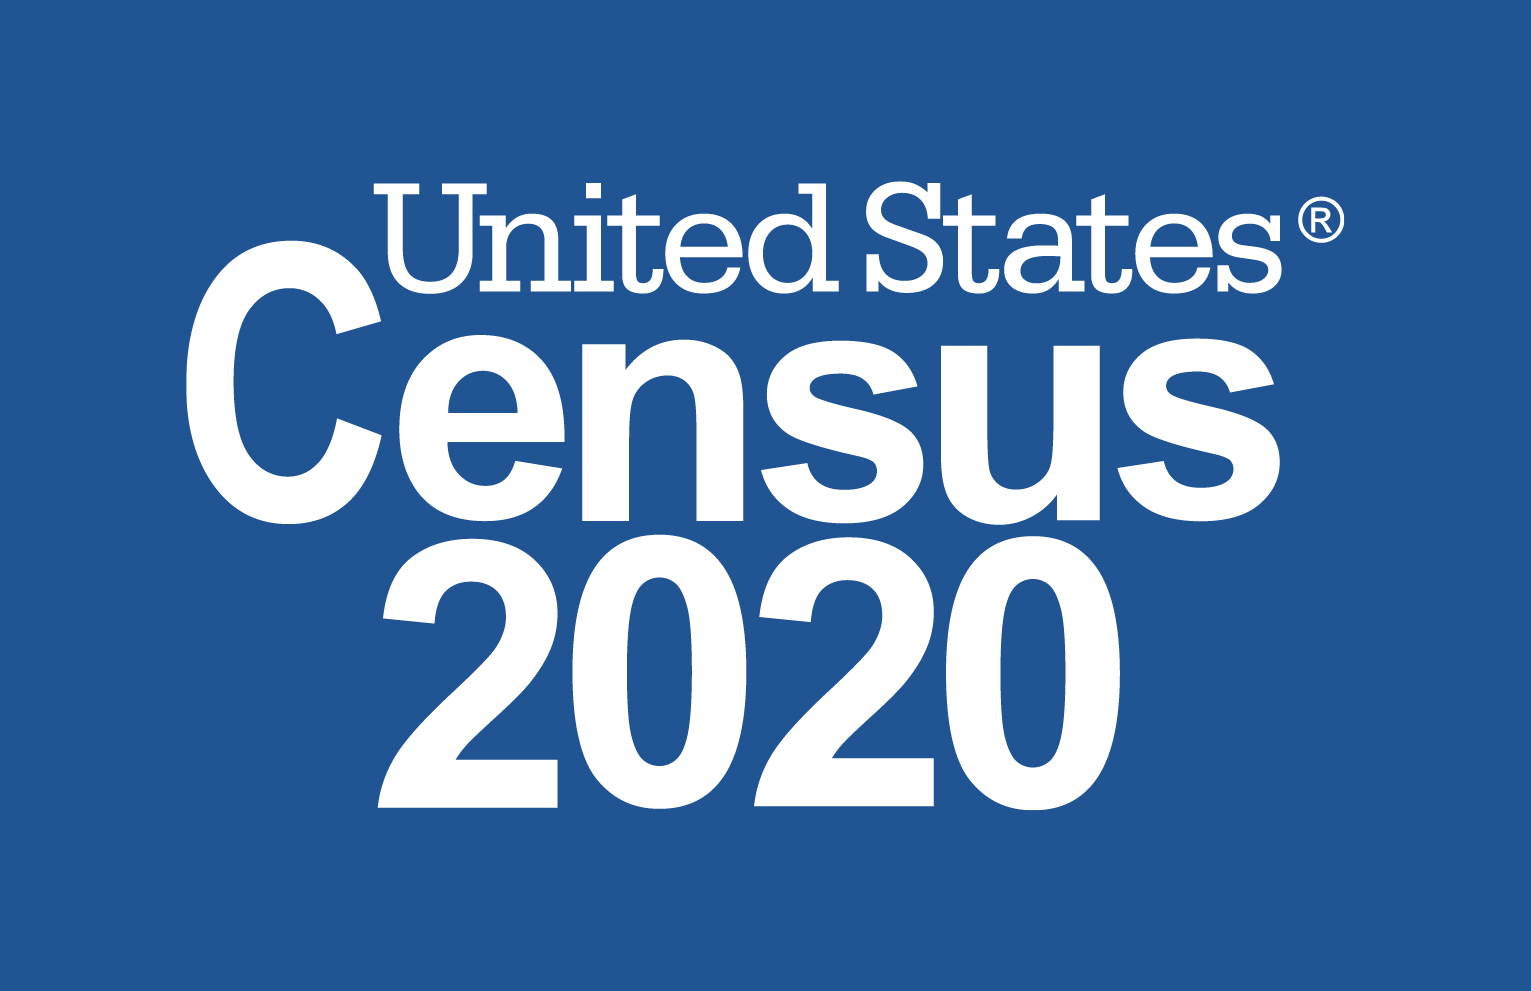 United States Census 2020 Logo